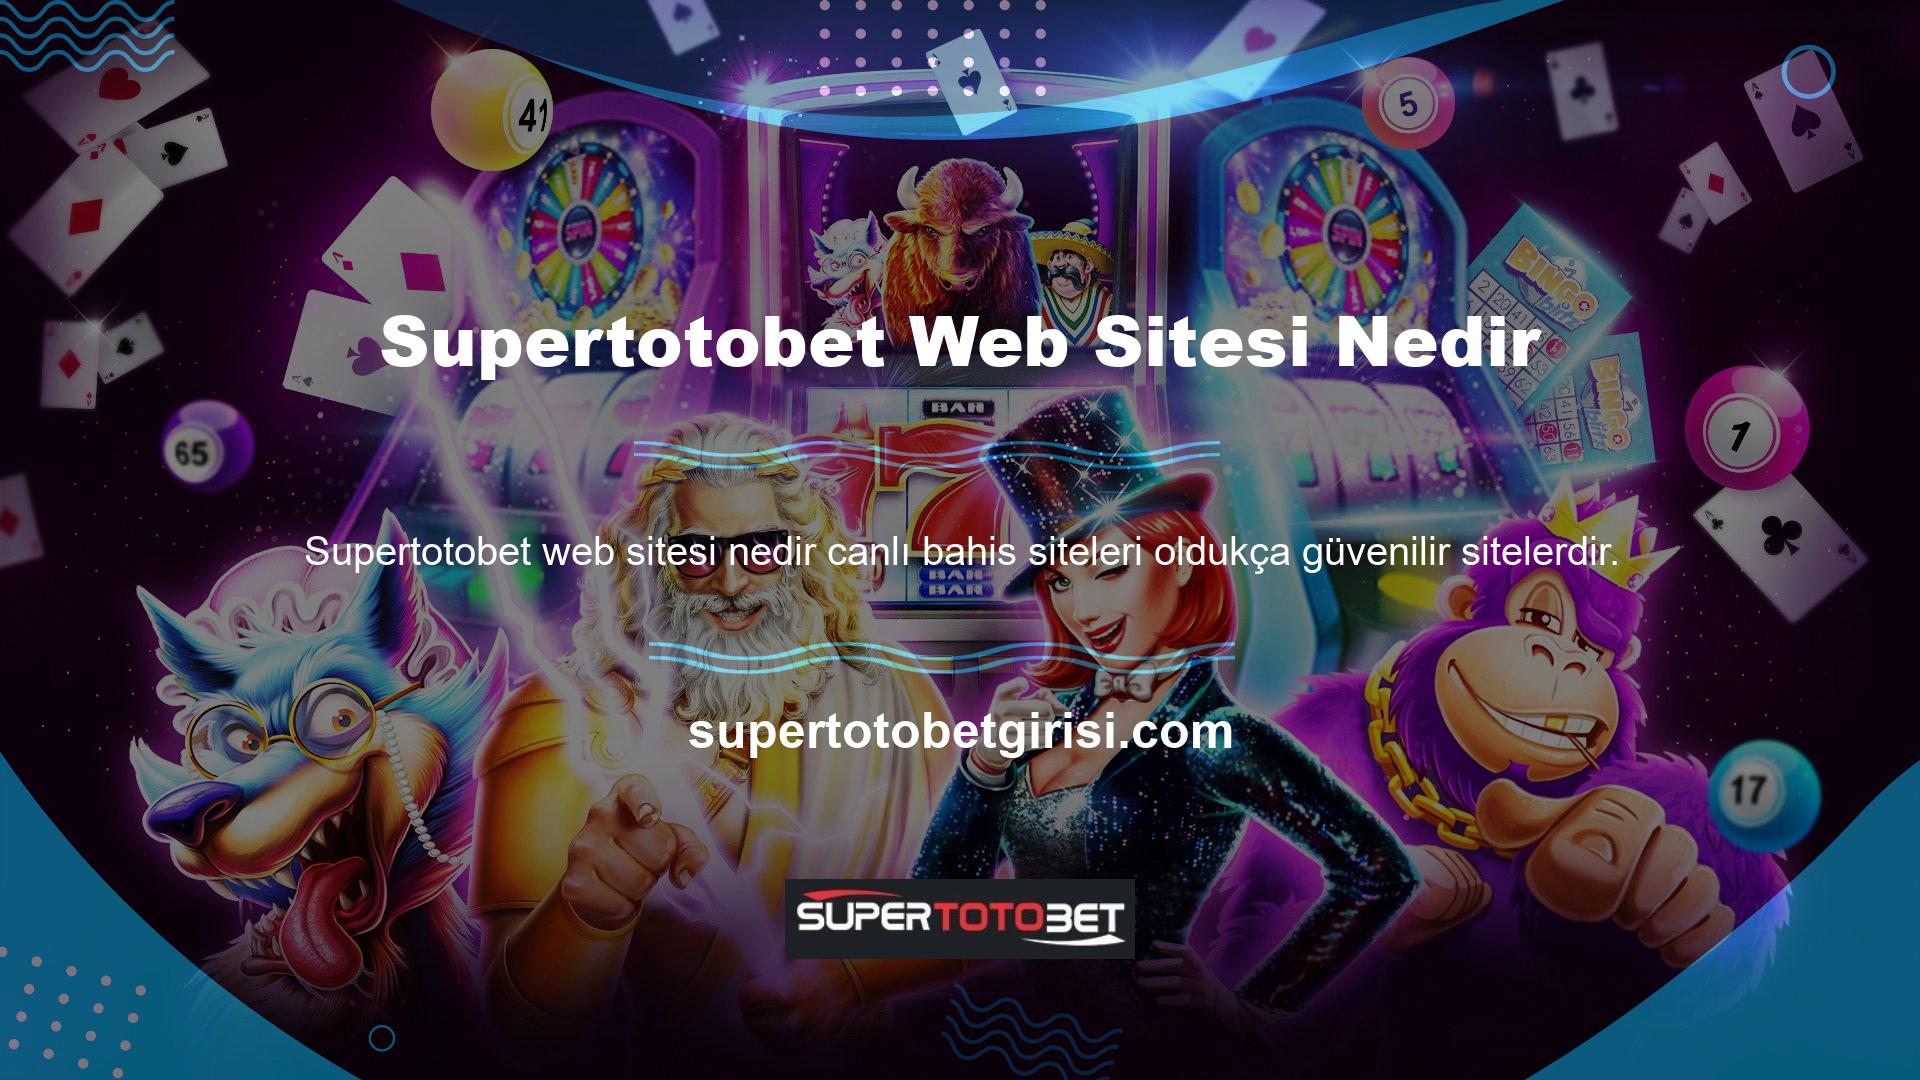 Supertotobet, kullanıcılarına birçok seçenek ve fırsat sunan bir kanaldır